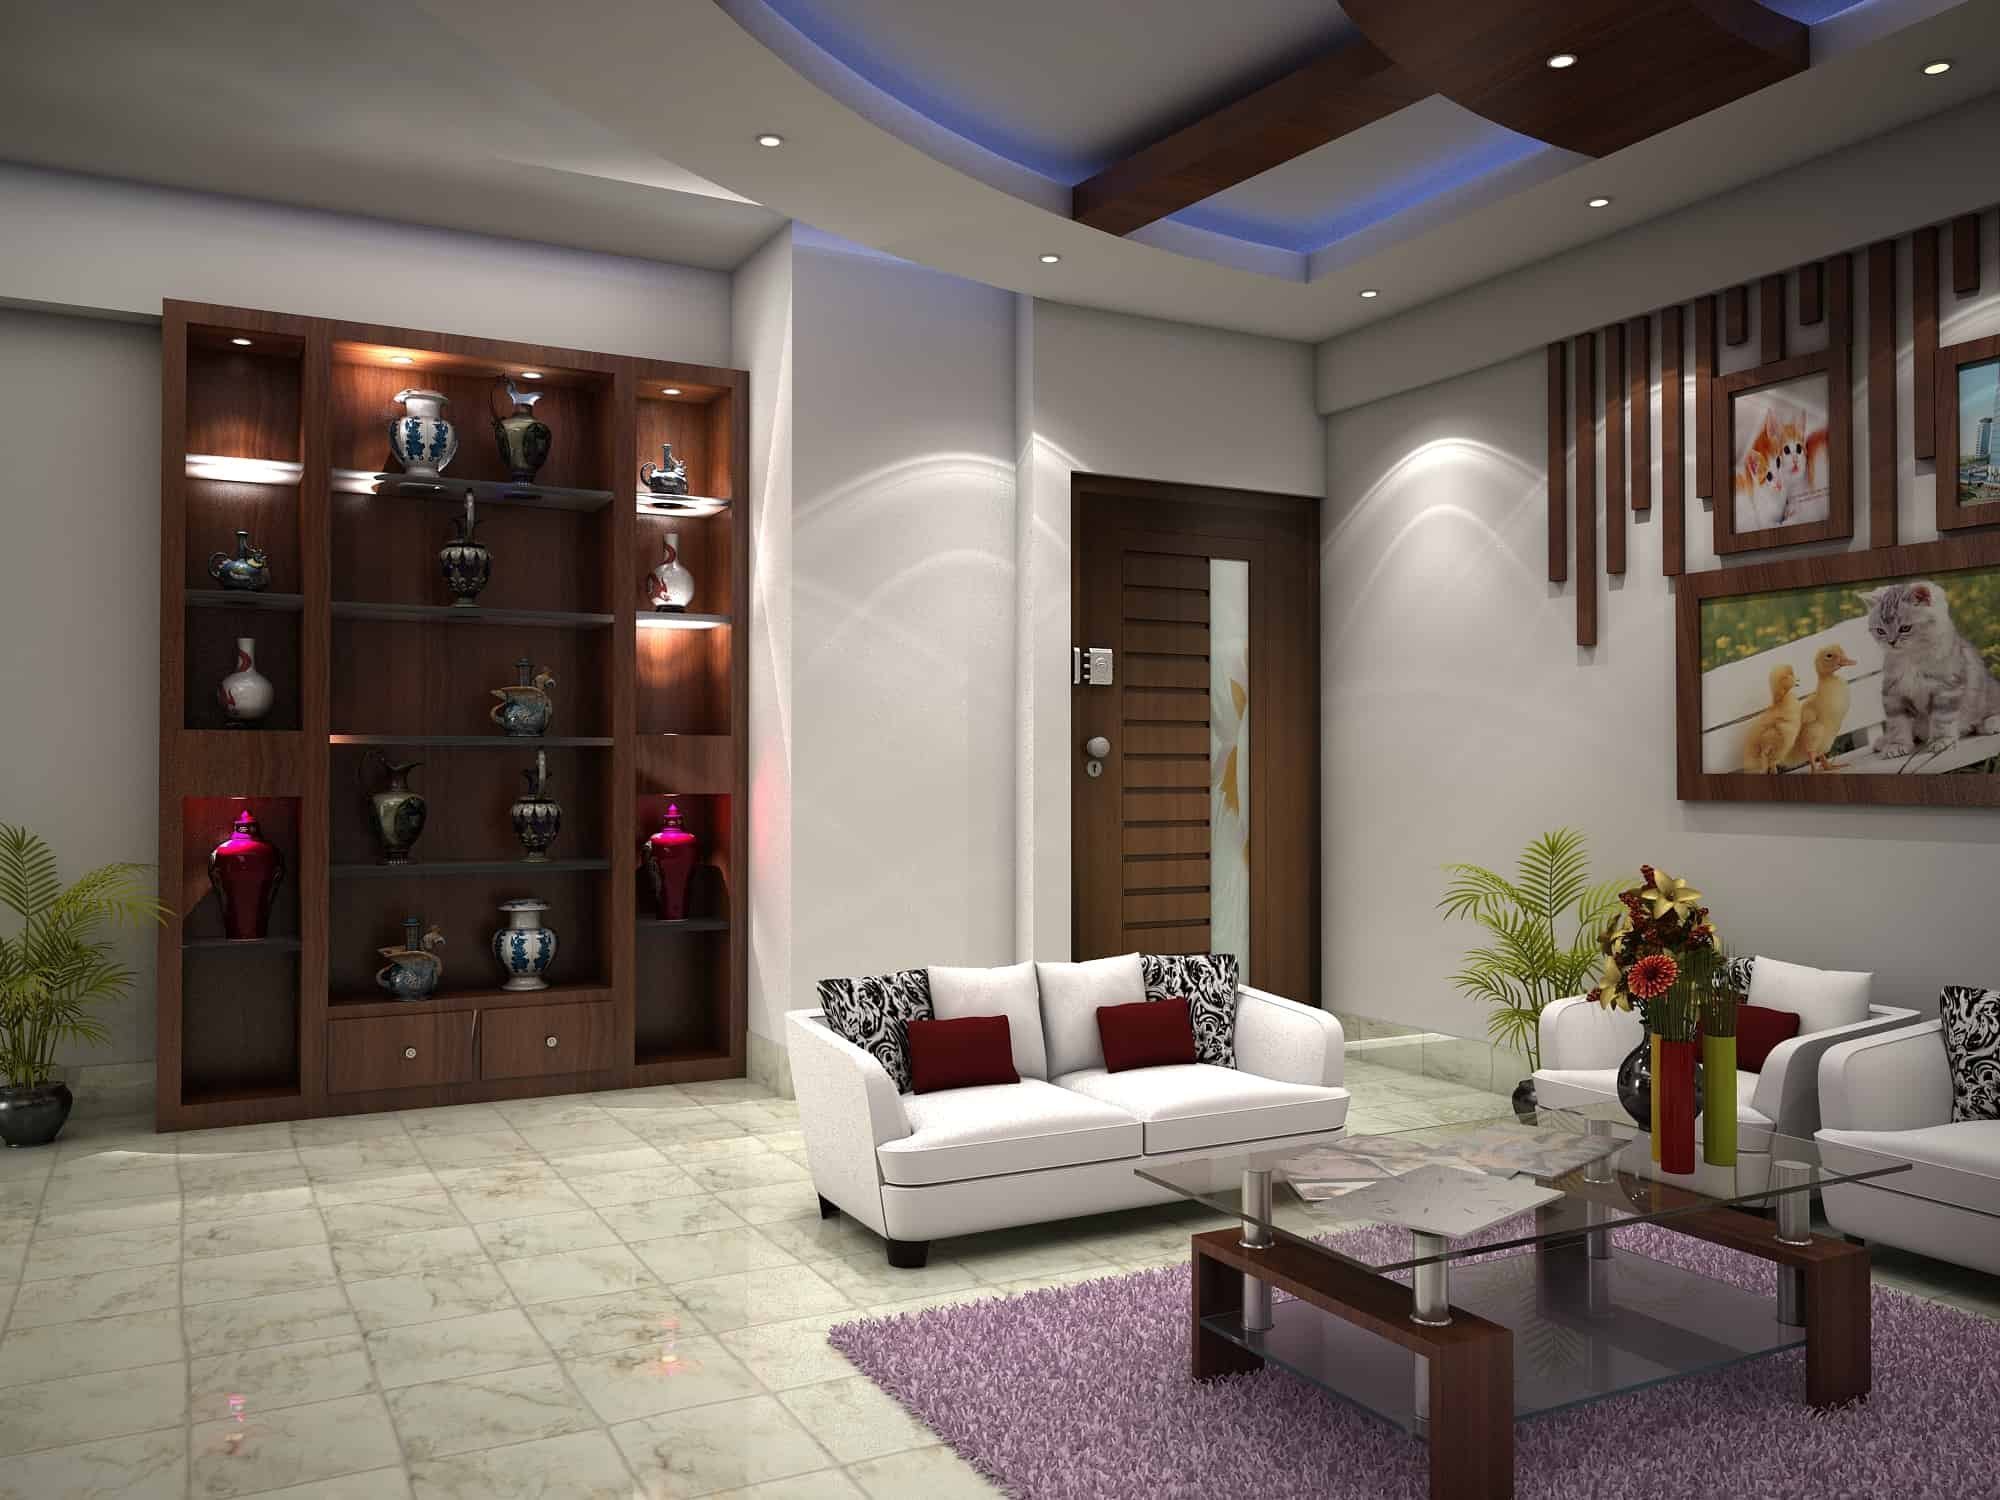 Living Room Design Ideas for Any Budget | HGTV